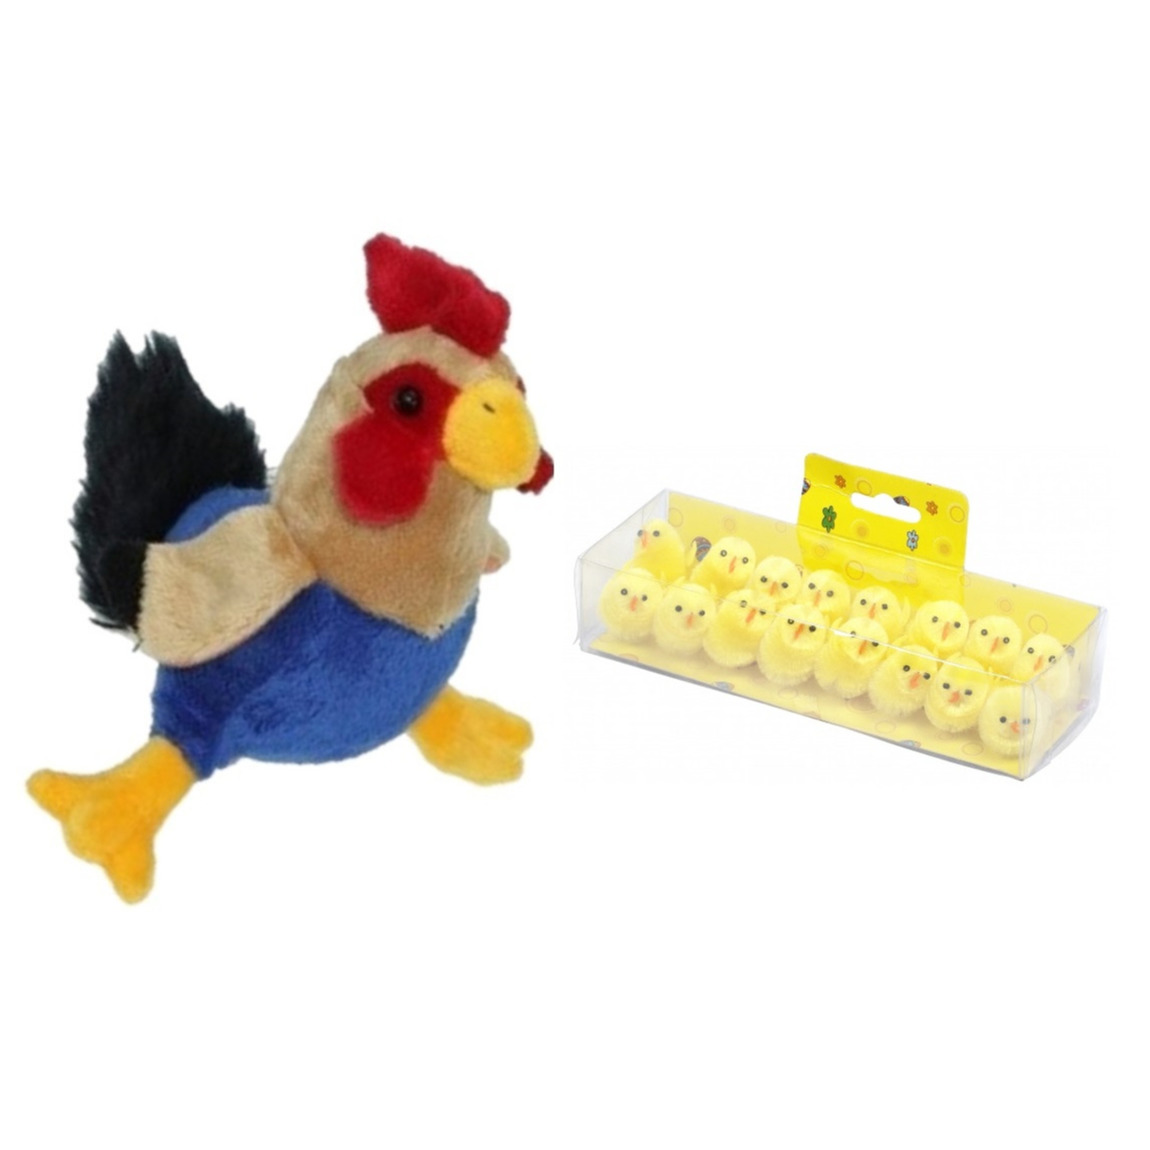 Pluche kippen-hanen knuffel van 20 cm met 16x stuks mini kuikentjes 3,5 cm